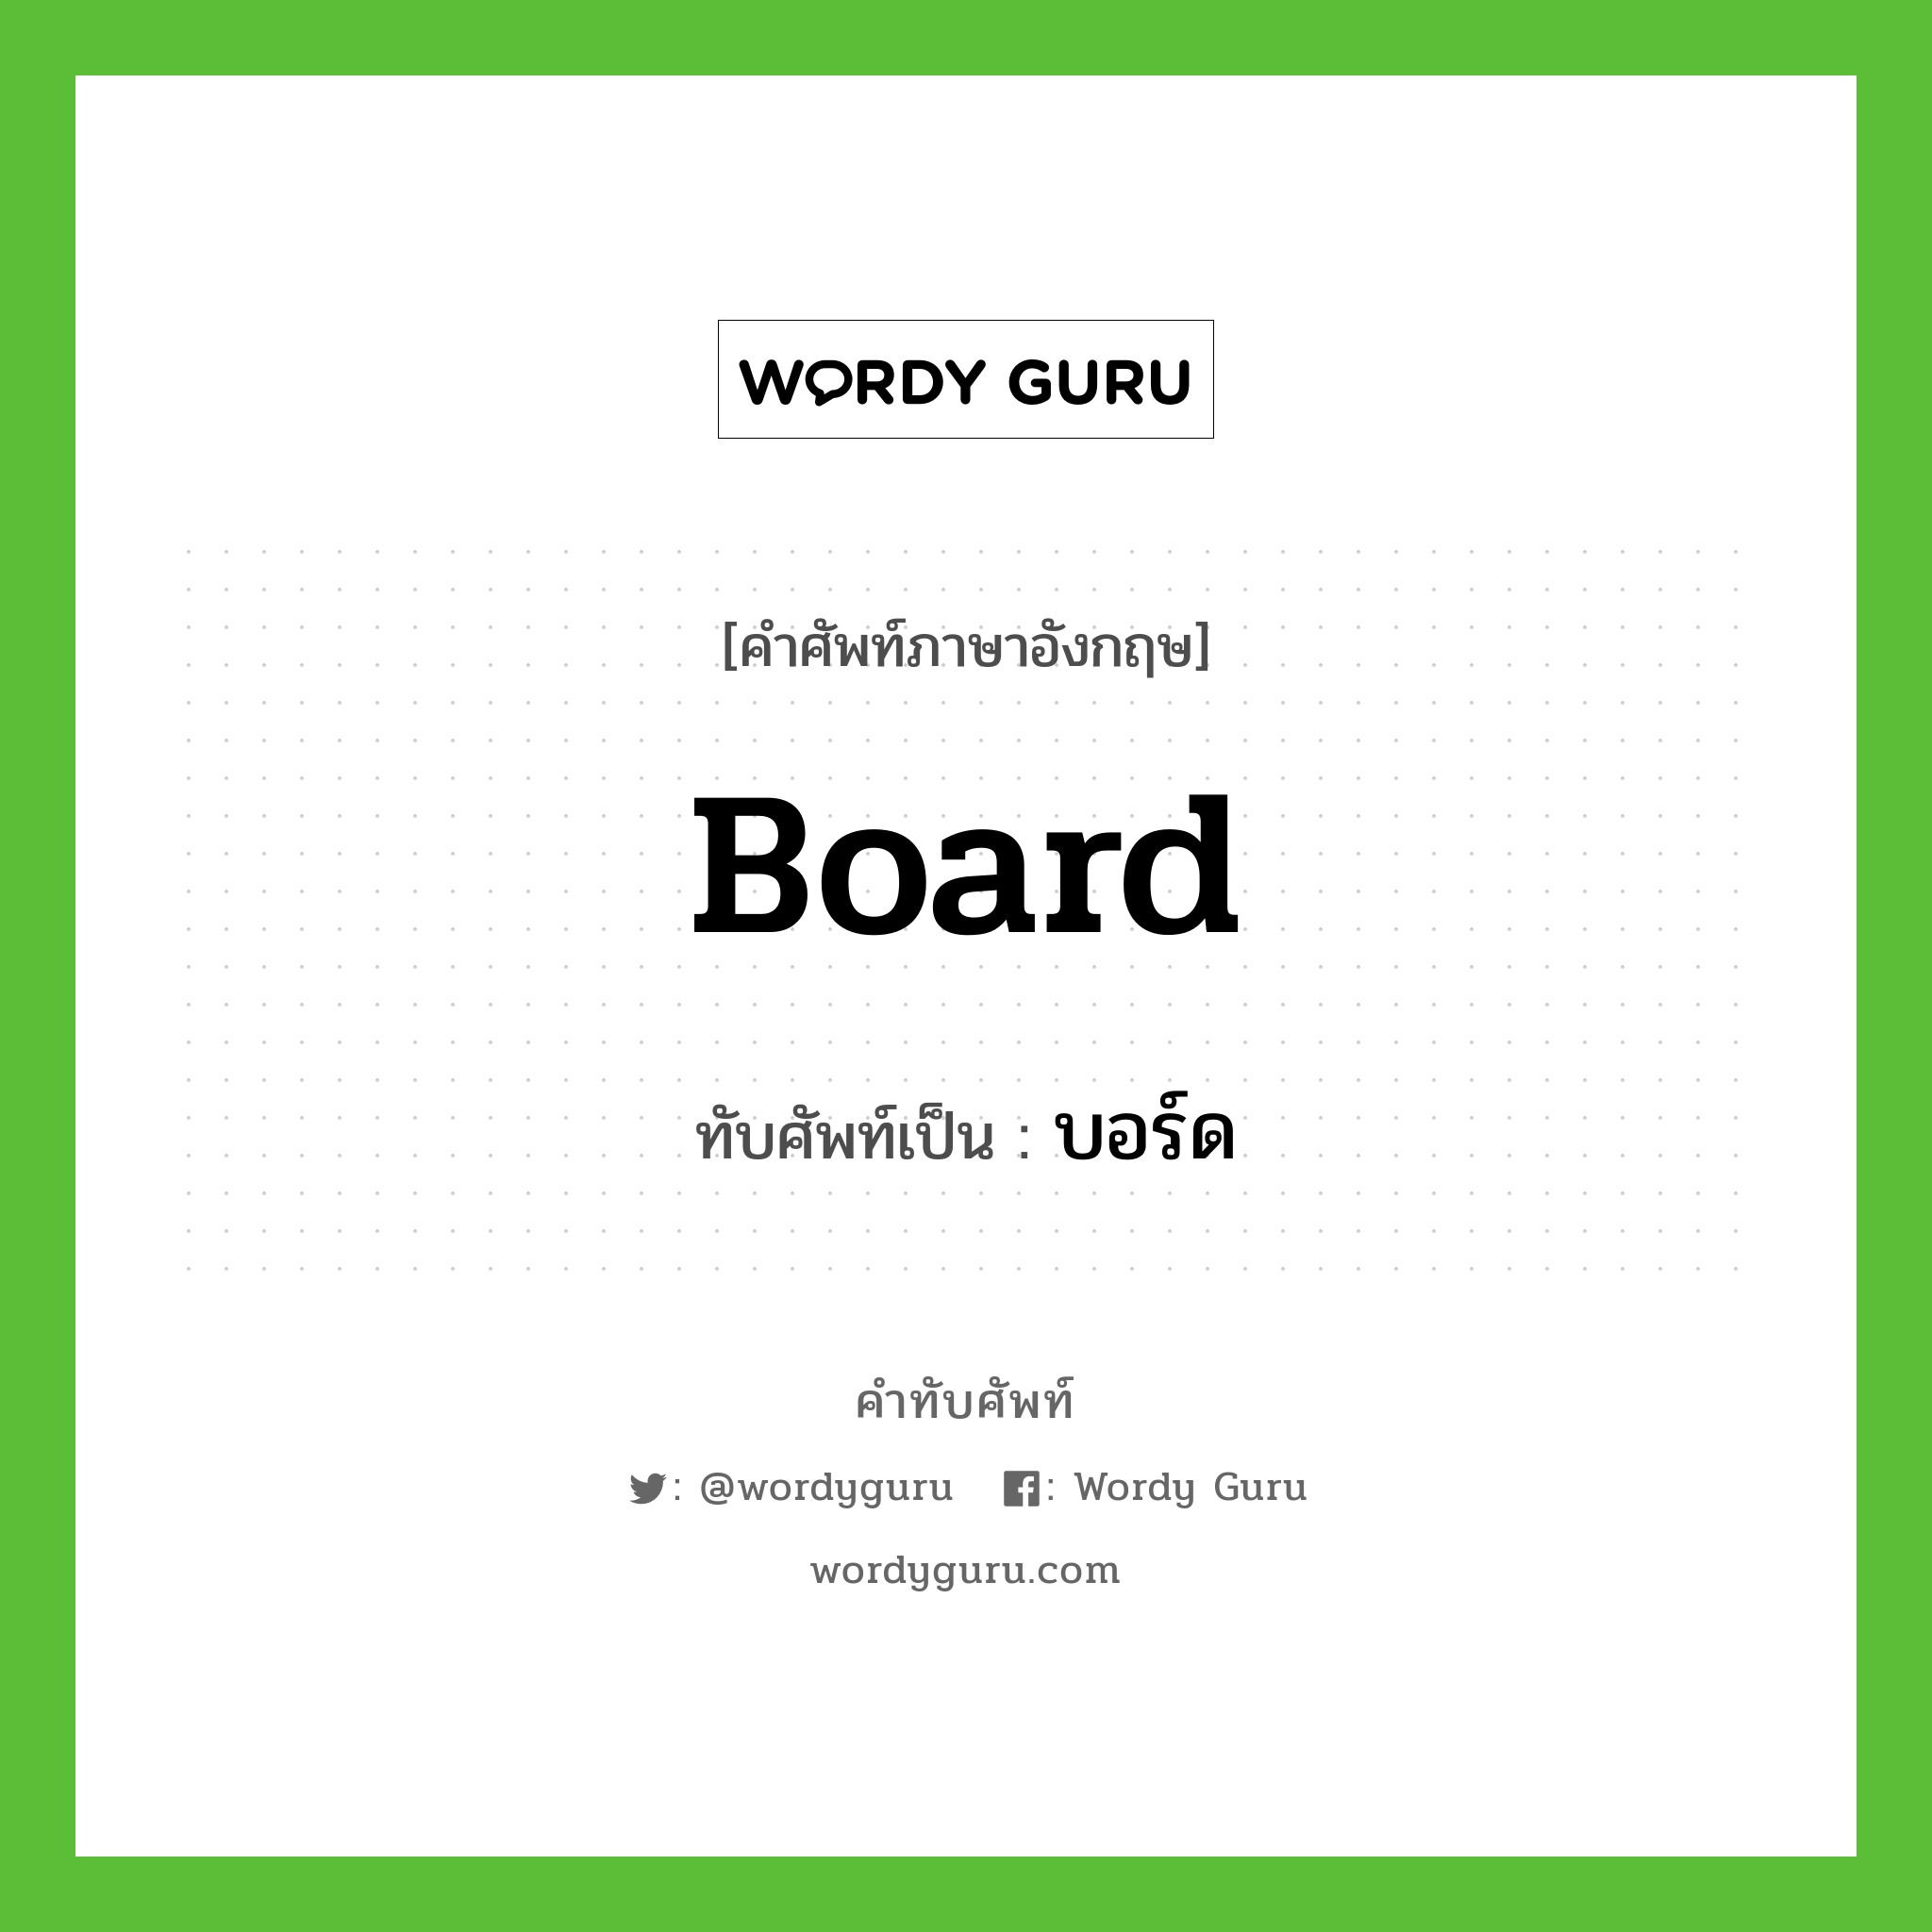 board เขียนเป็นคำไทยว่าอะไร?, คำศัพท์ภาษาอังกฤษ board ทับศัพท์เป็น บอร์ด